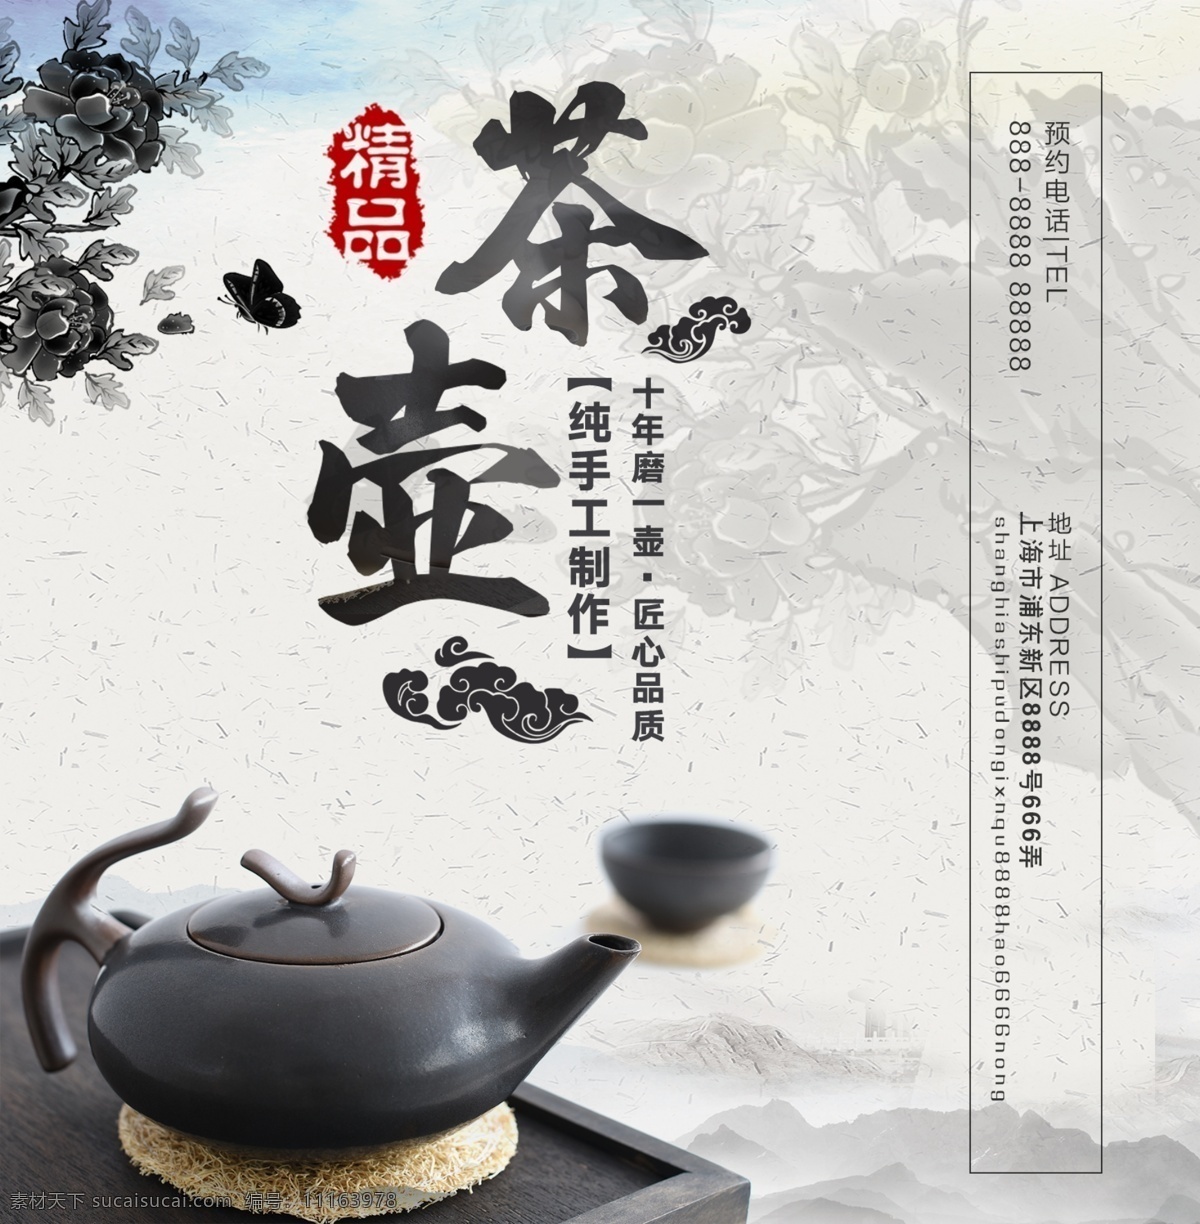 茶壶 茶叶 大气 黑色 简约 礼品 新年 中国风 精品 手提袋 白色 中国 风 礼品包装